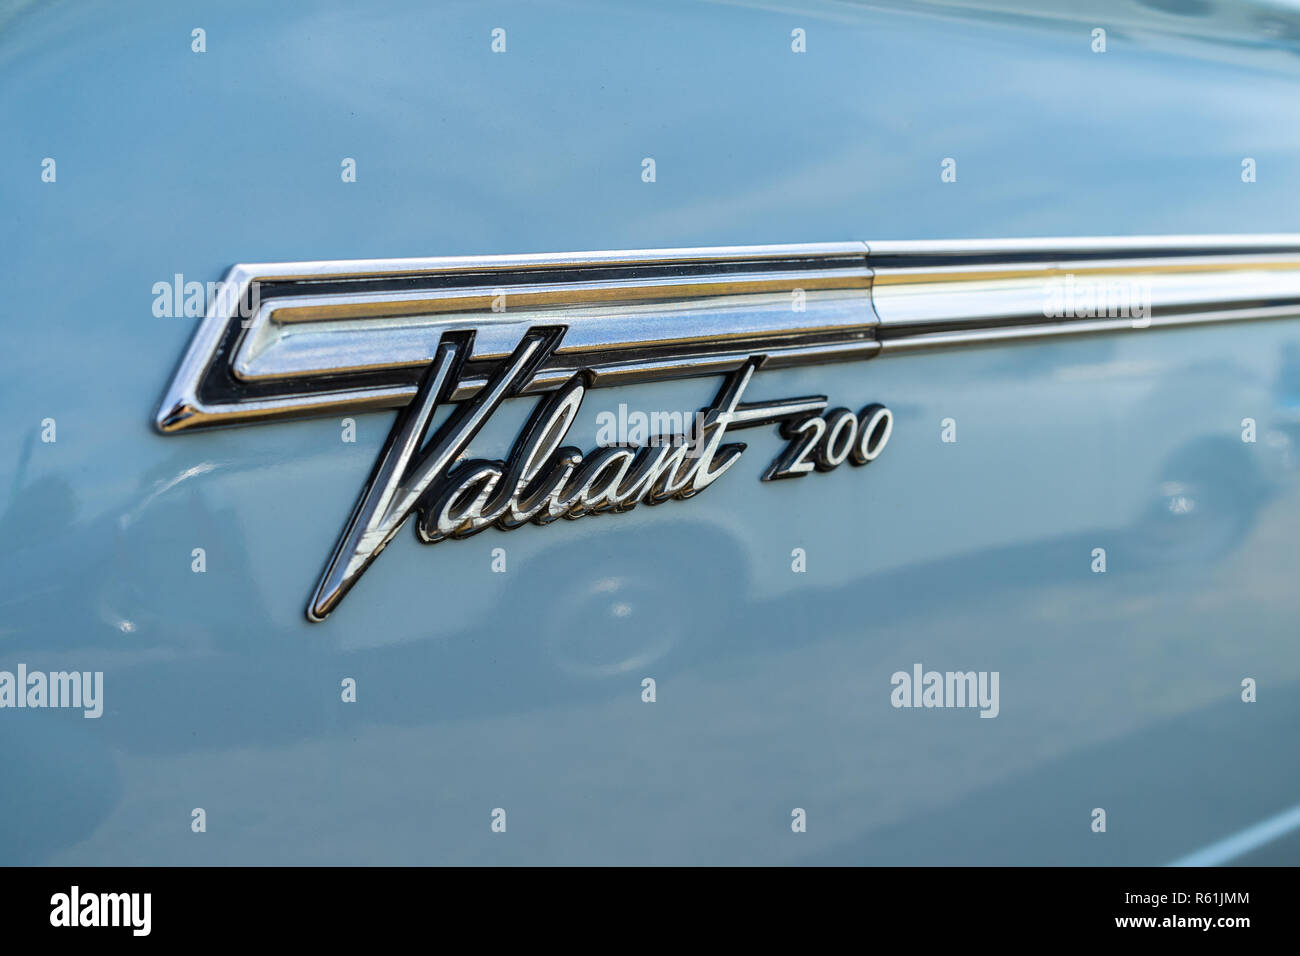 PAAREN IM GLIEN, Germania - 19 Maggio 2018: emblema di una vettura compatta Plymouth Valiant 200, 1966. Mostra 'Die Oldtimer Show 2018". Foto Stock